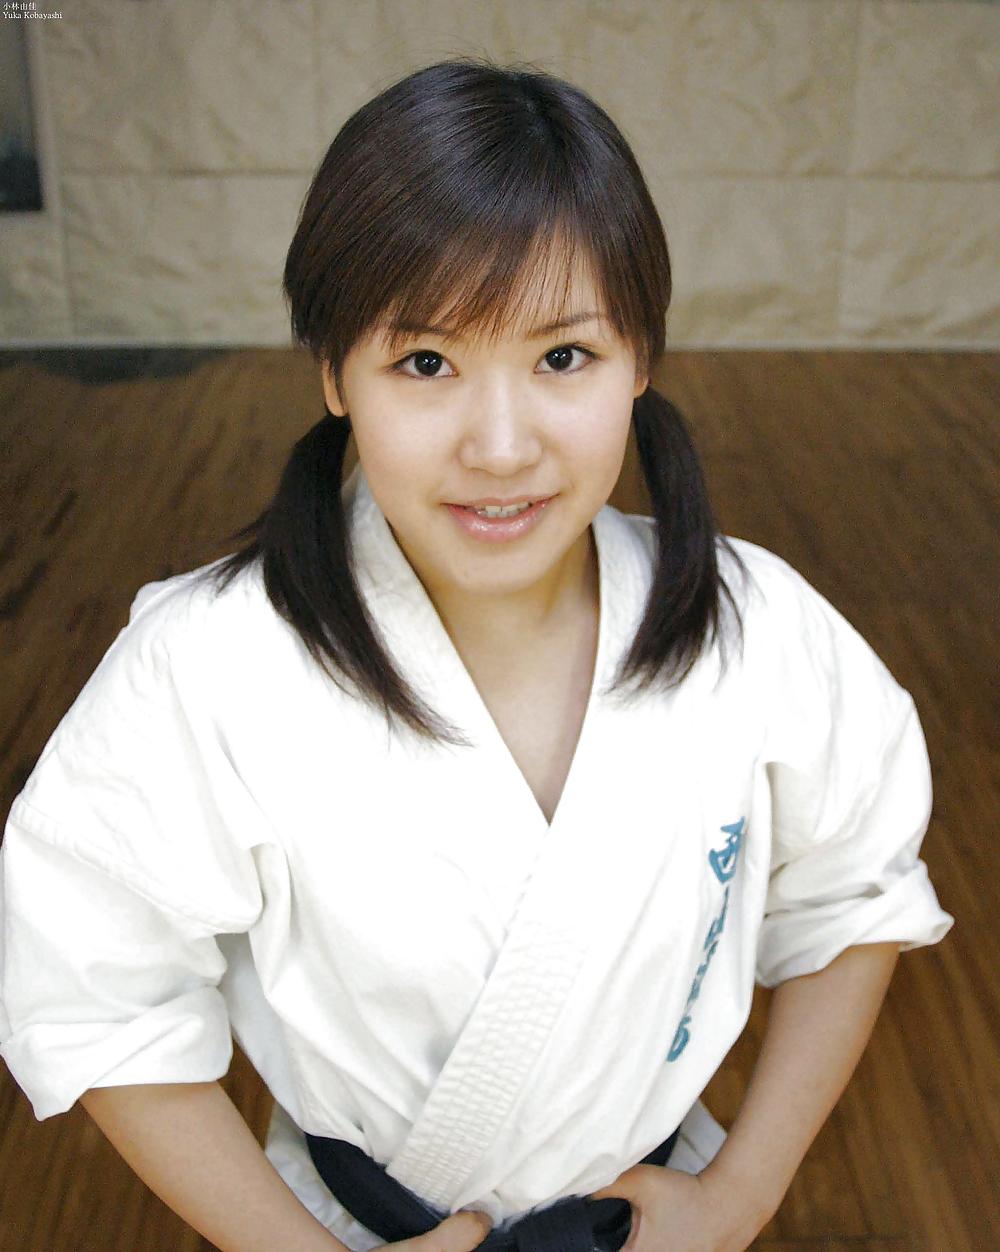 小林由佳さん、かわいい日本人女性。
 #3513655